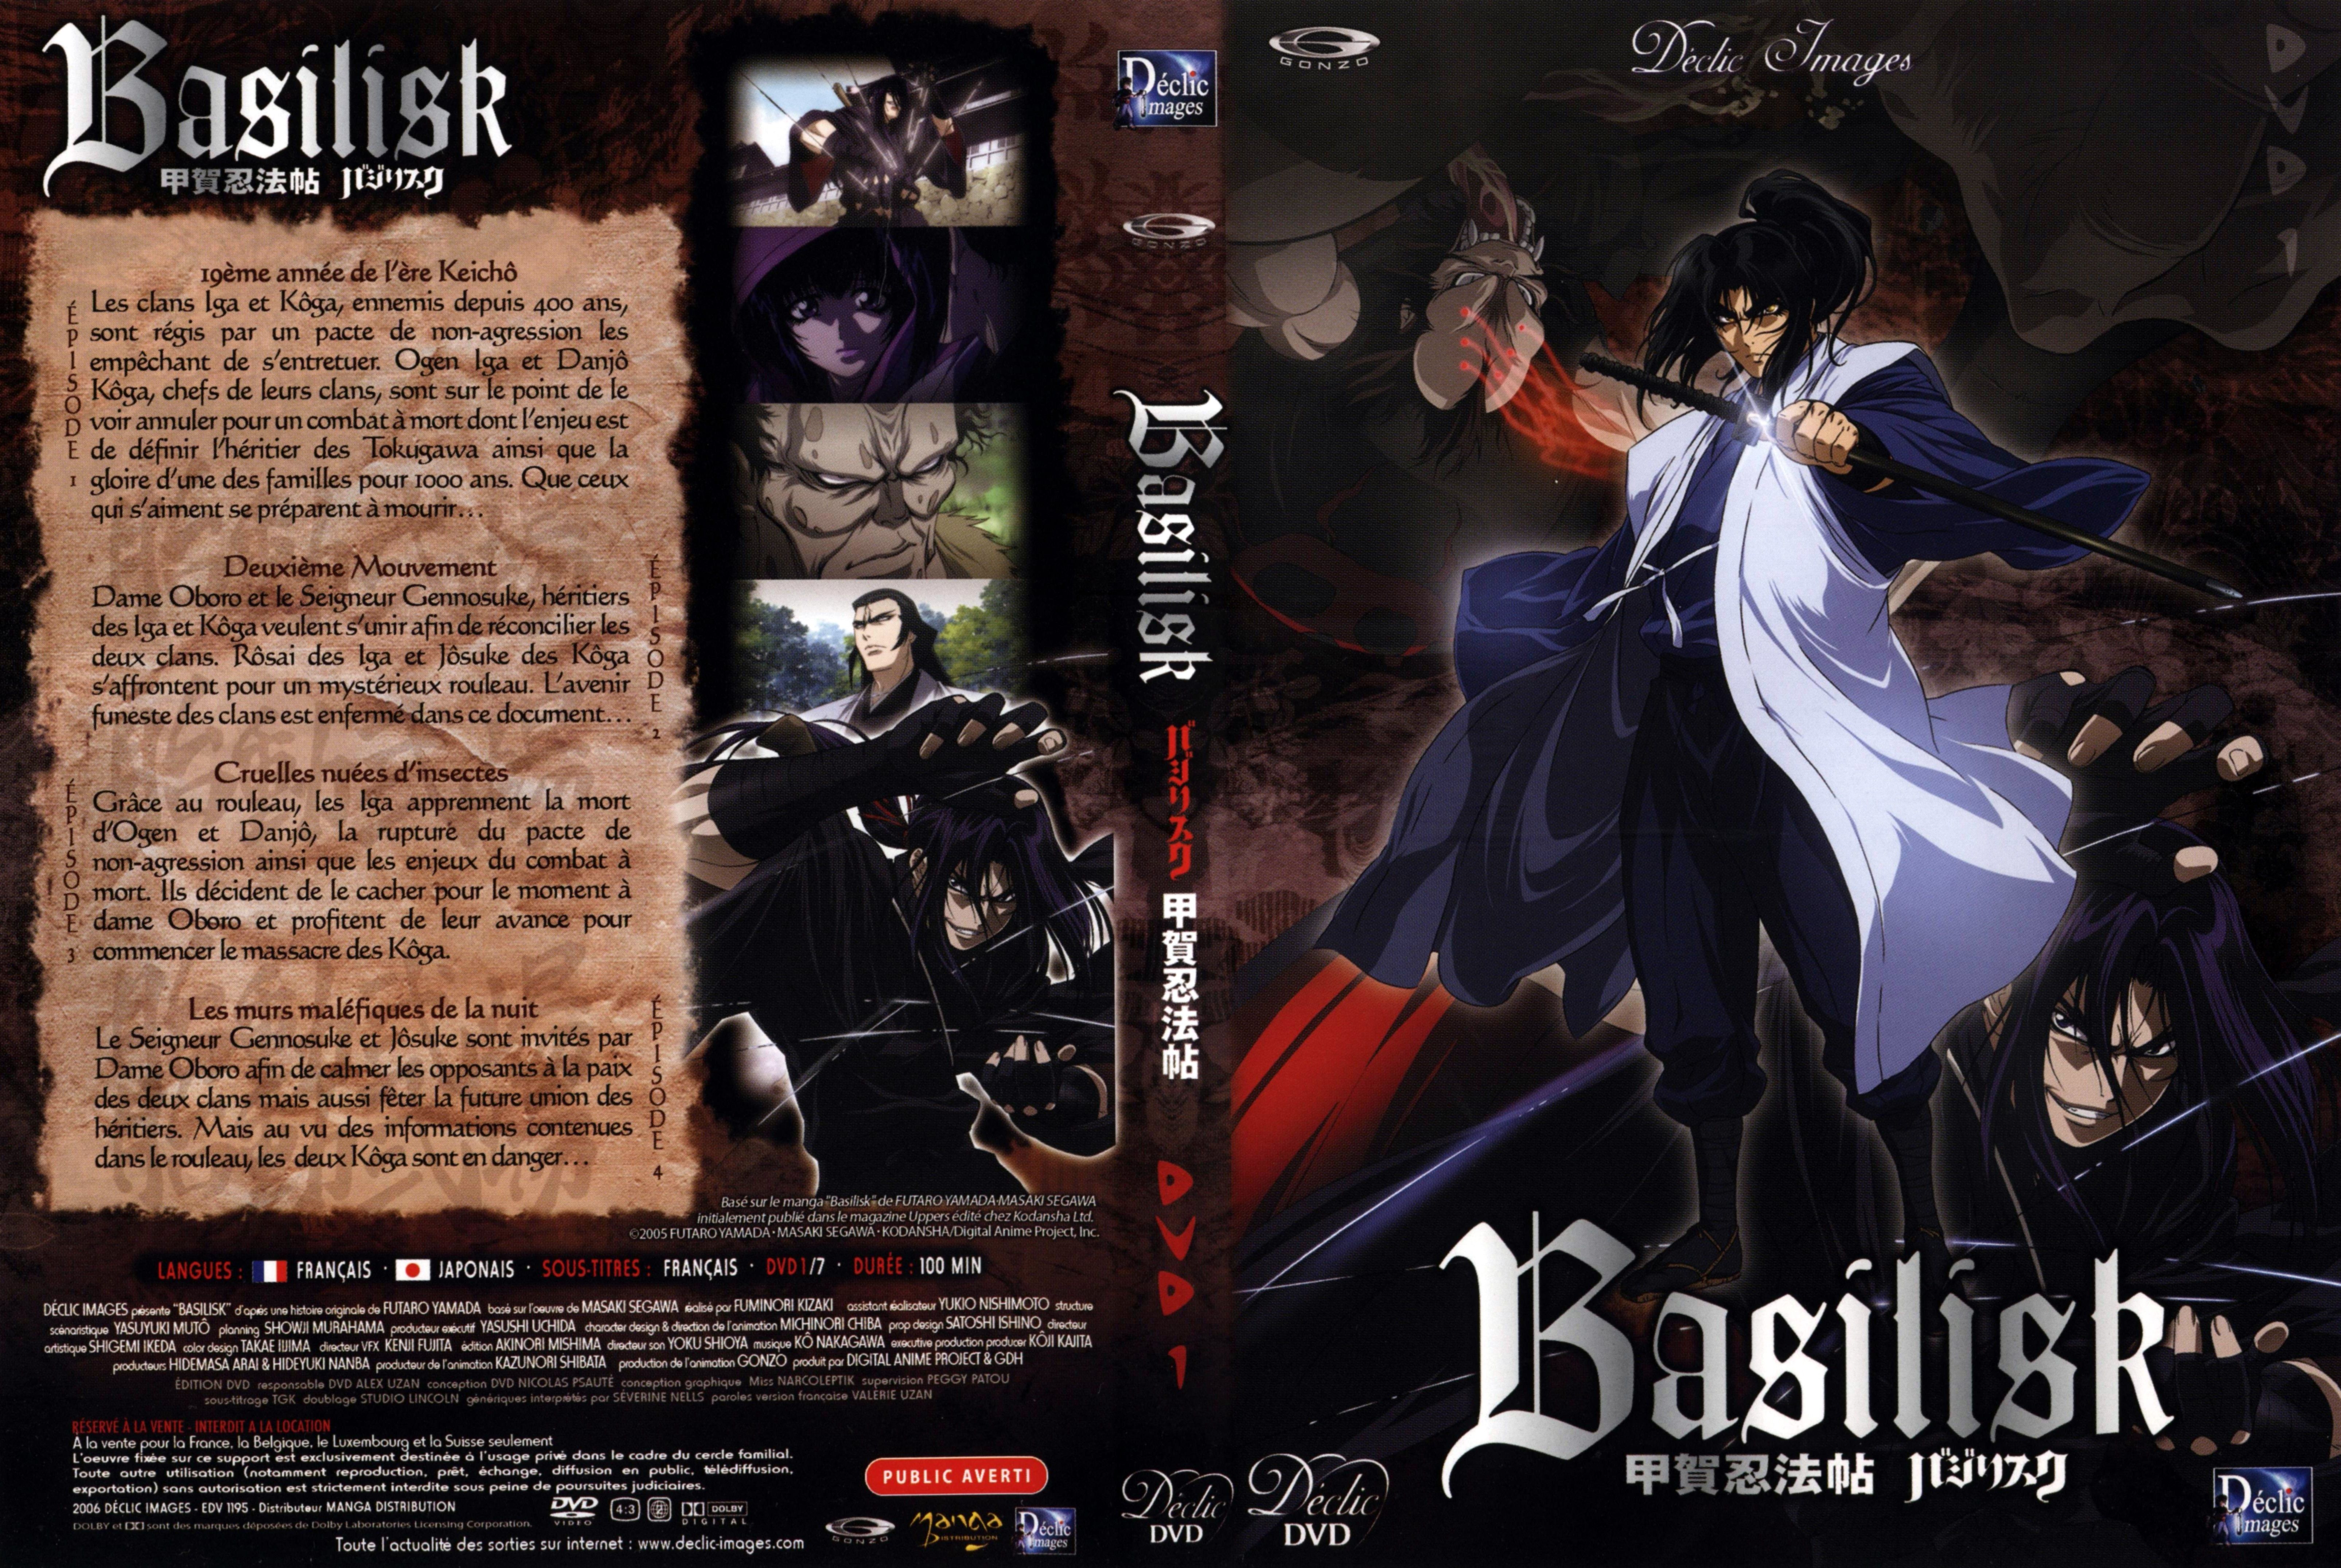 Jaquette DVD Basilisk vol 01